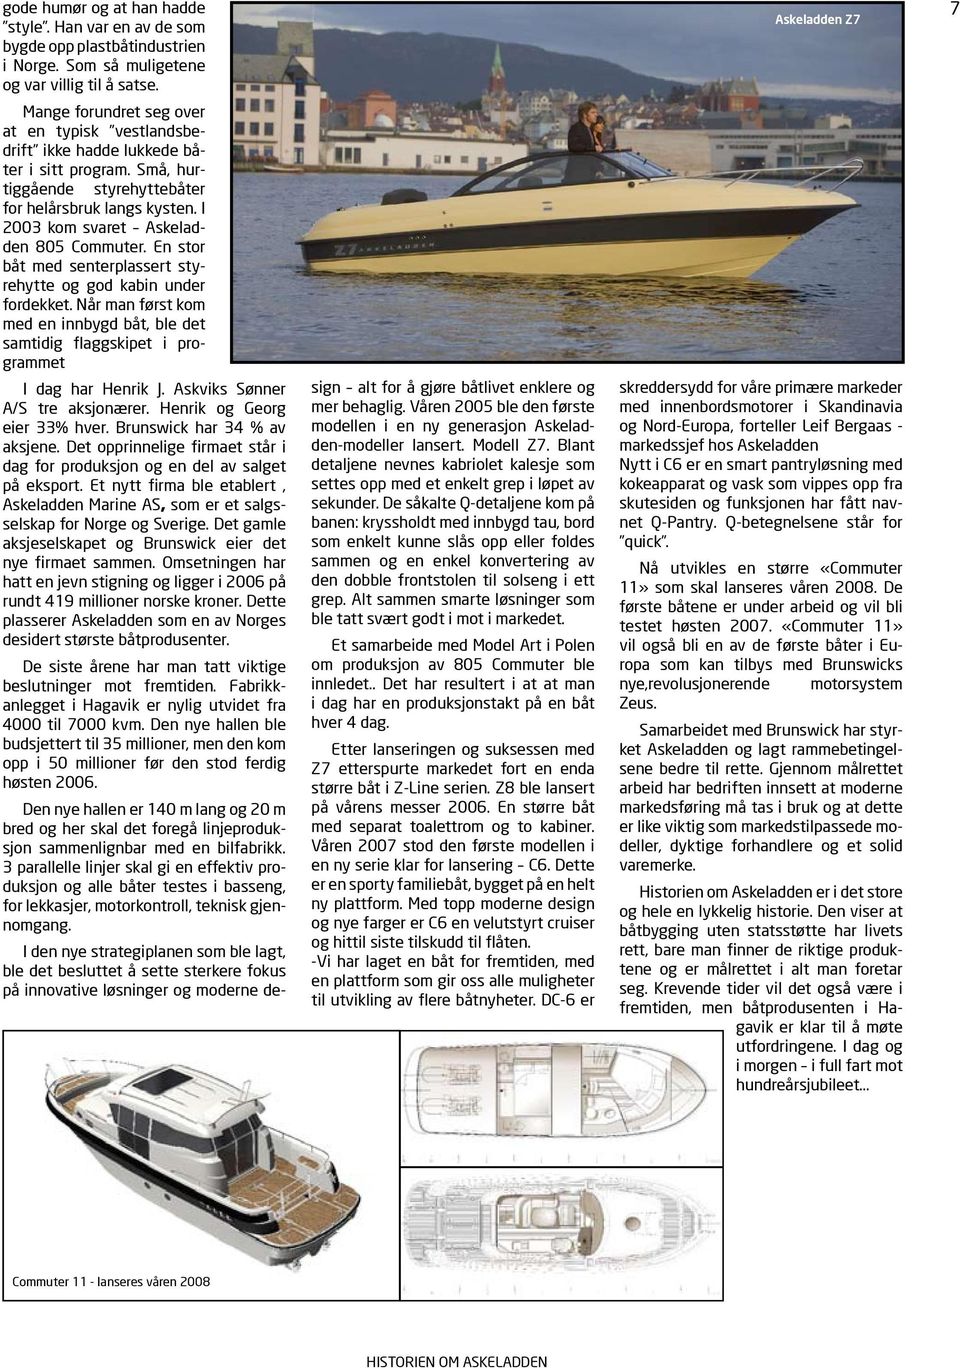 I 2003 kom svaret Askeladden 805 Commuter. En stor båt med senterplassert styrehytte og god kabin under fordekket.